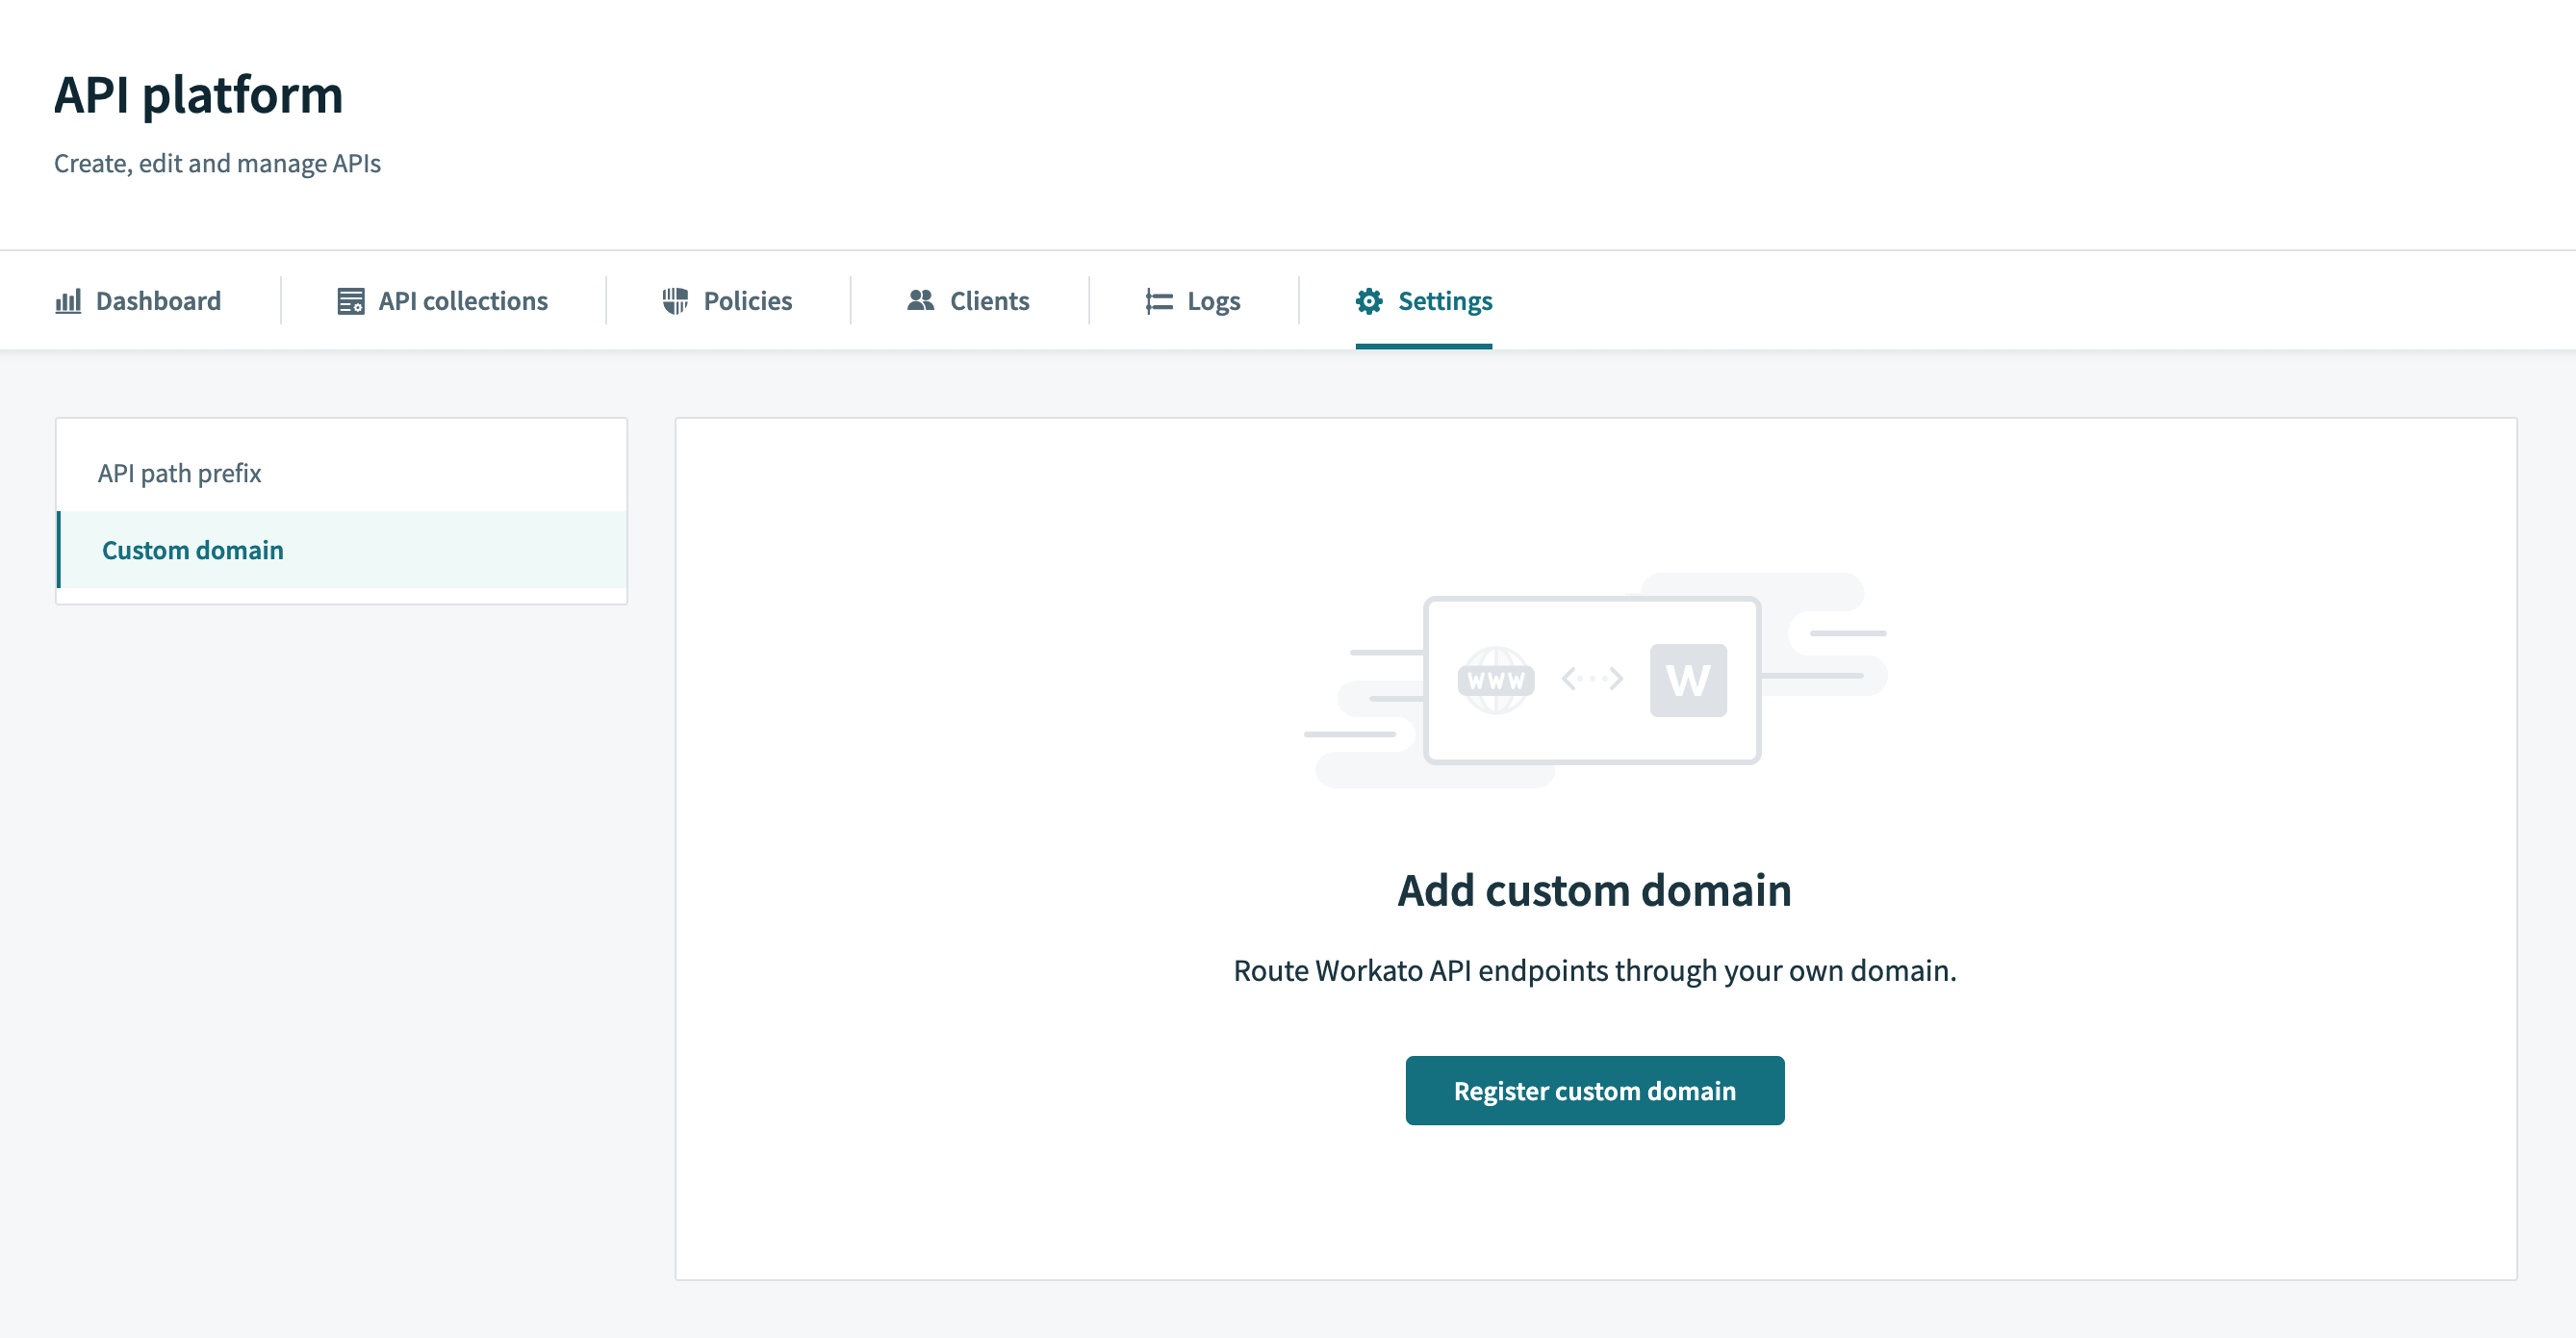 Register custom domain